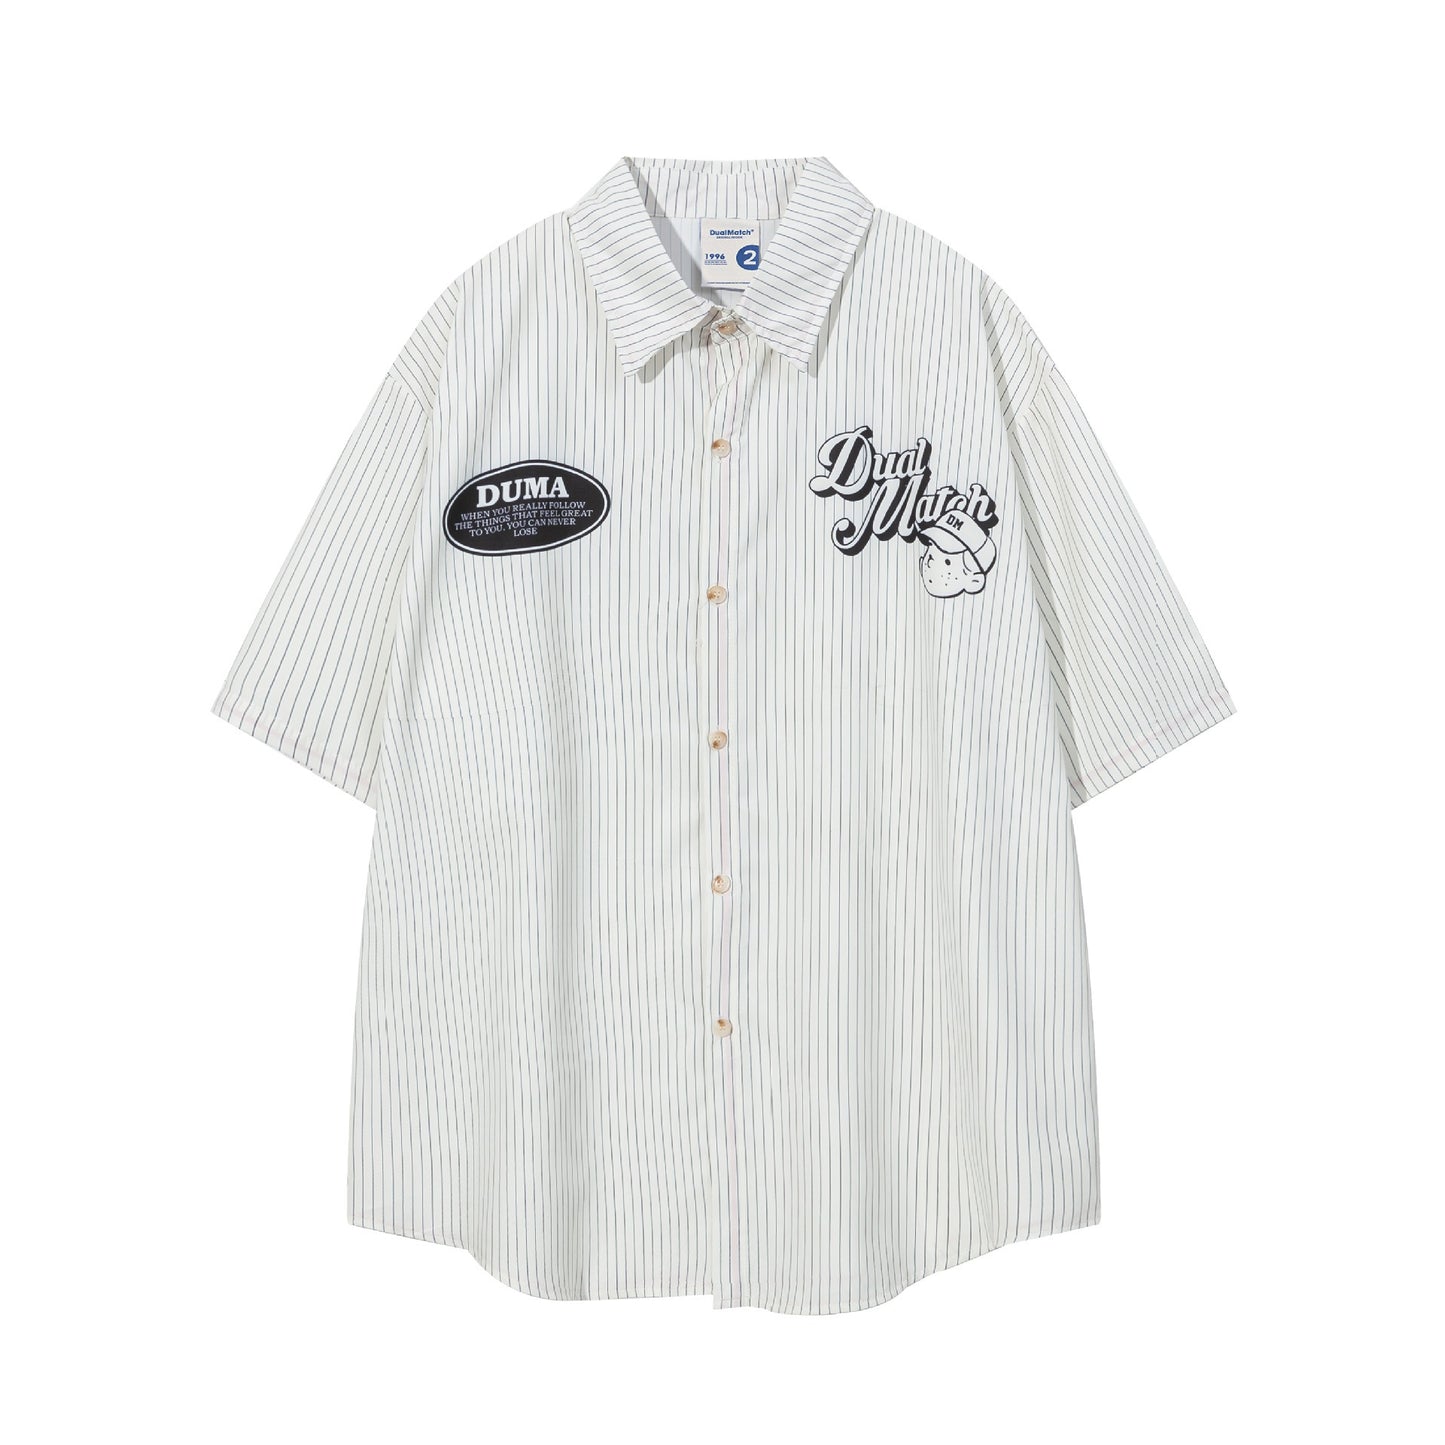 "Dual Match Baseball Boy" Oversized Men's Sleeve Shirt